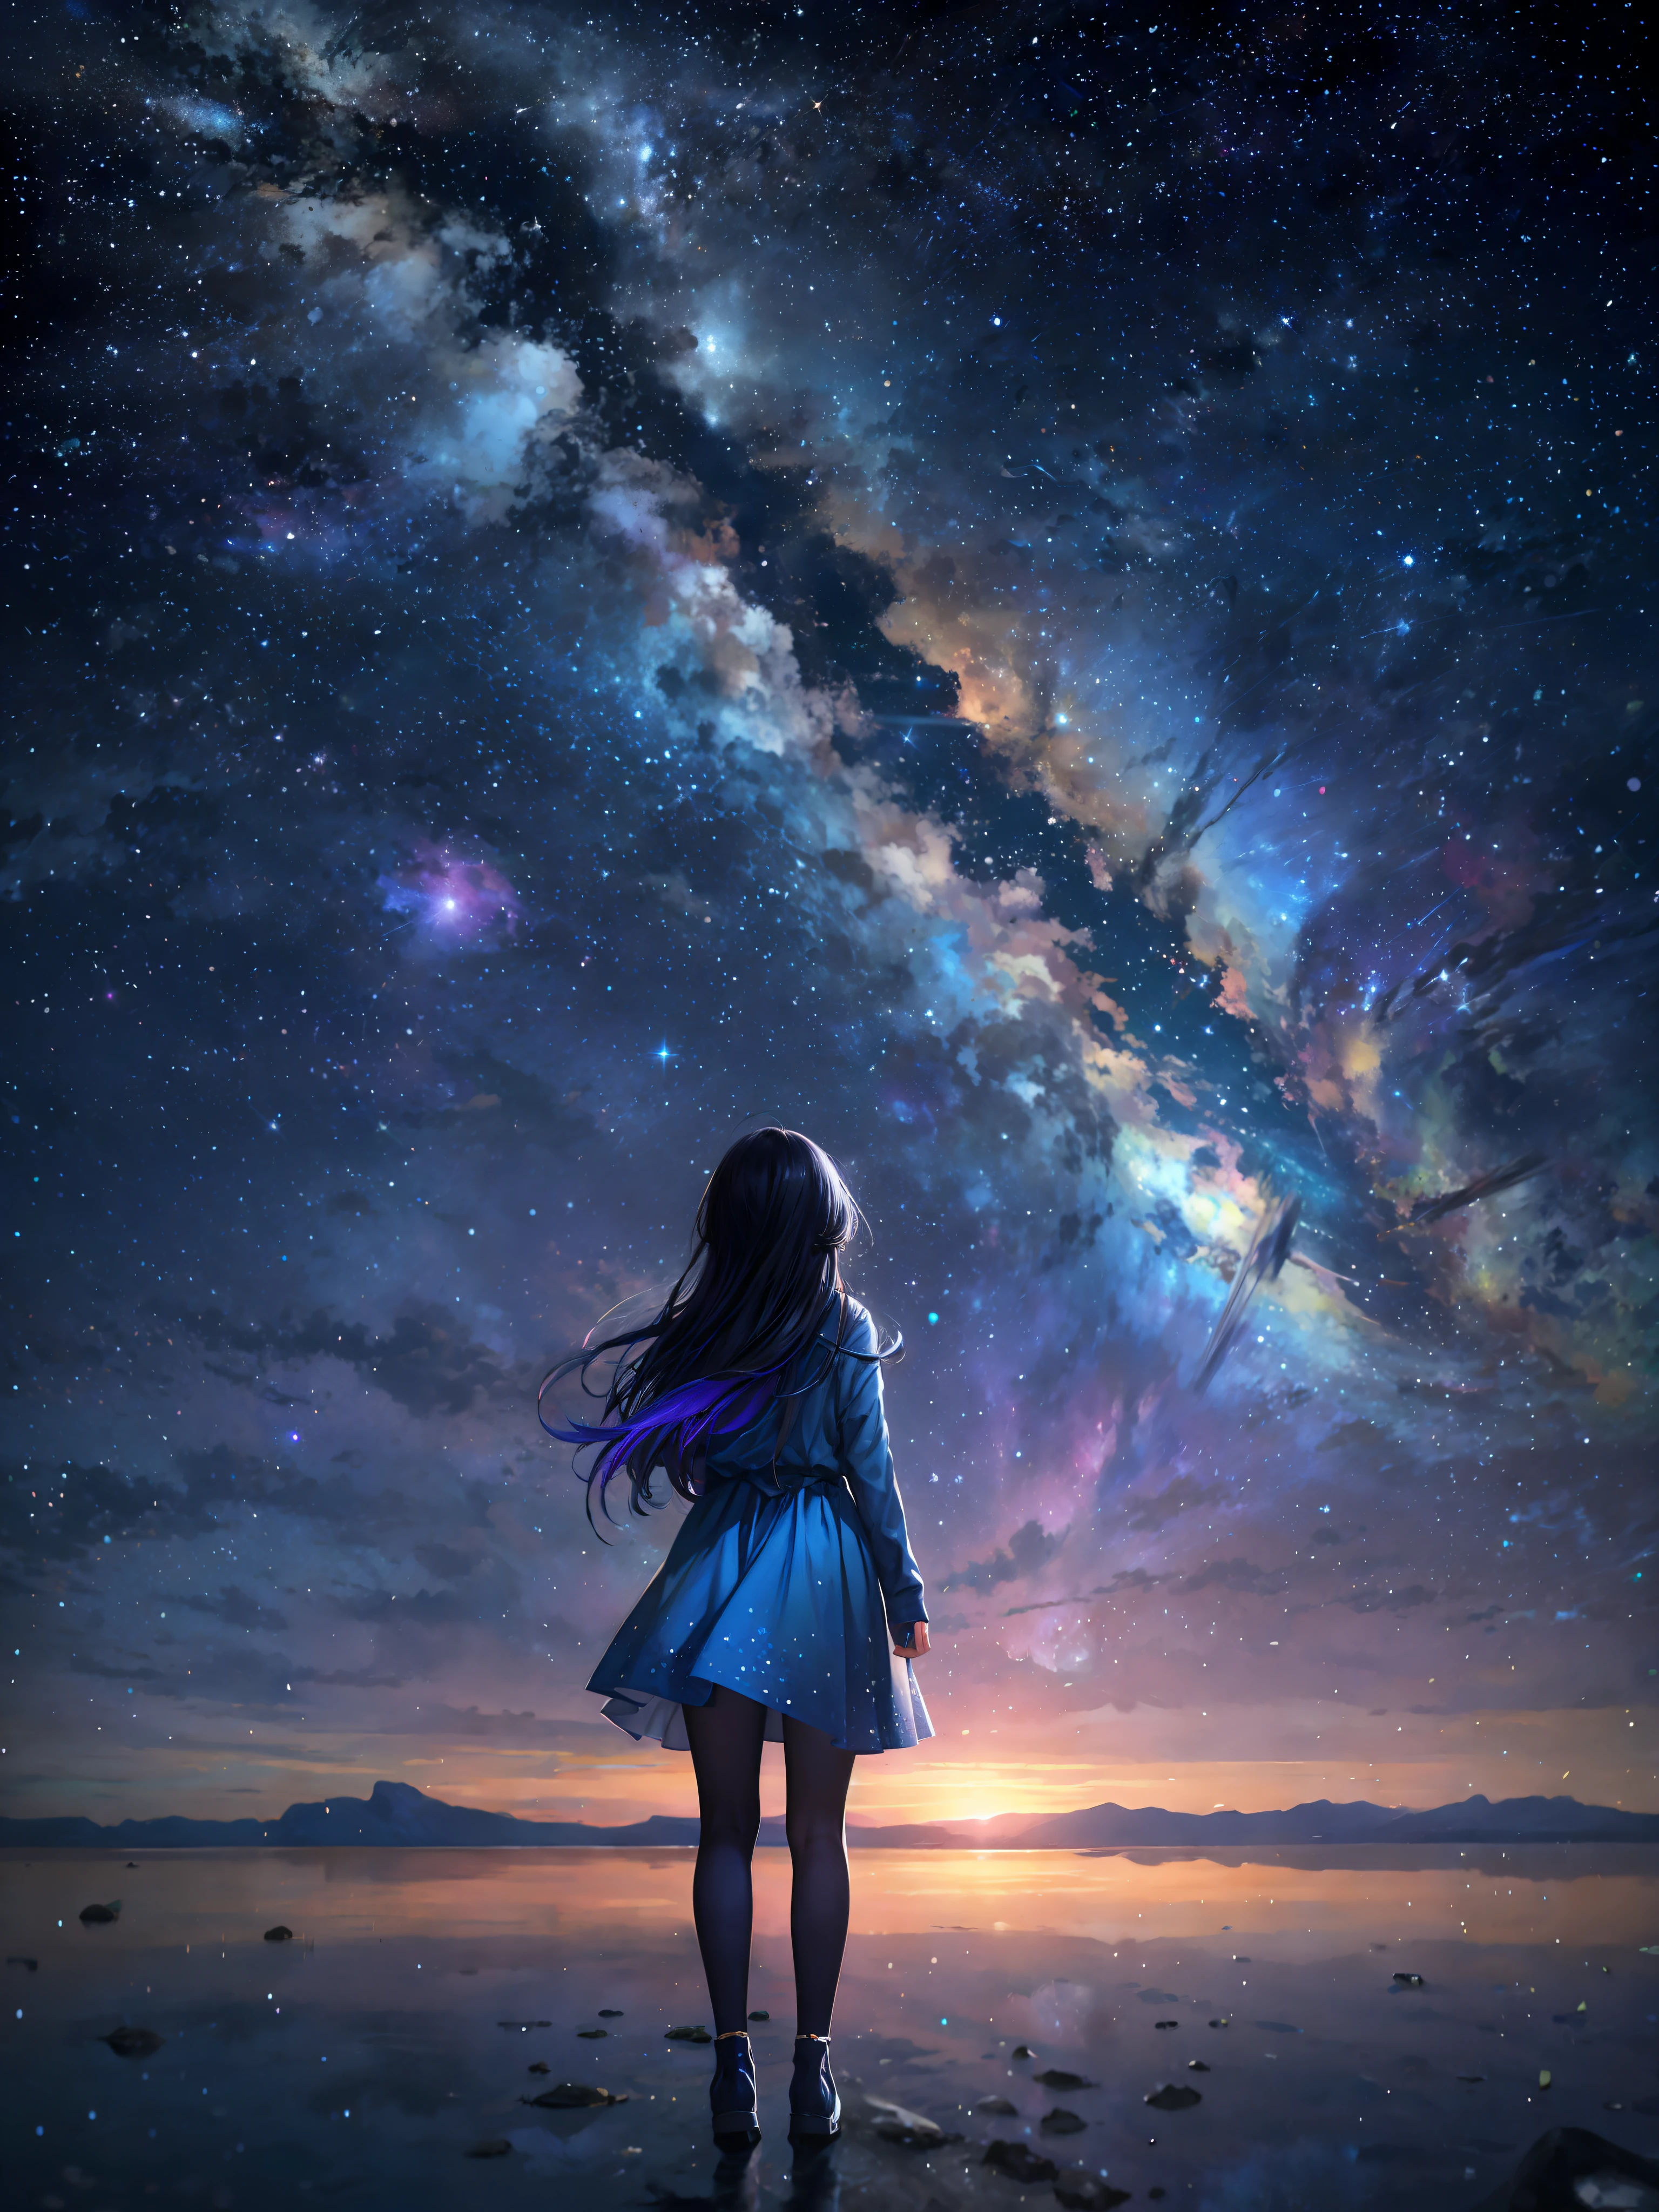 Céu estrelado com uma mulher em pé em uma praia olhando para as estrelas, garota olha para o espaço, Menina do anime com cabelo azul escuro em um vestido branco, garota no espaço, cosmos infinito ao fundo, olhando para o cosmos, papel de parede incrível, em um fundo de aparência de galáxia, linda garota no horizonte, olhando para o espaço, makoto shinkai cyril rolando, Papel de parede de arte anime 4k